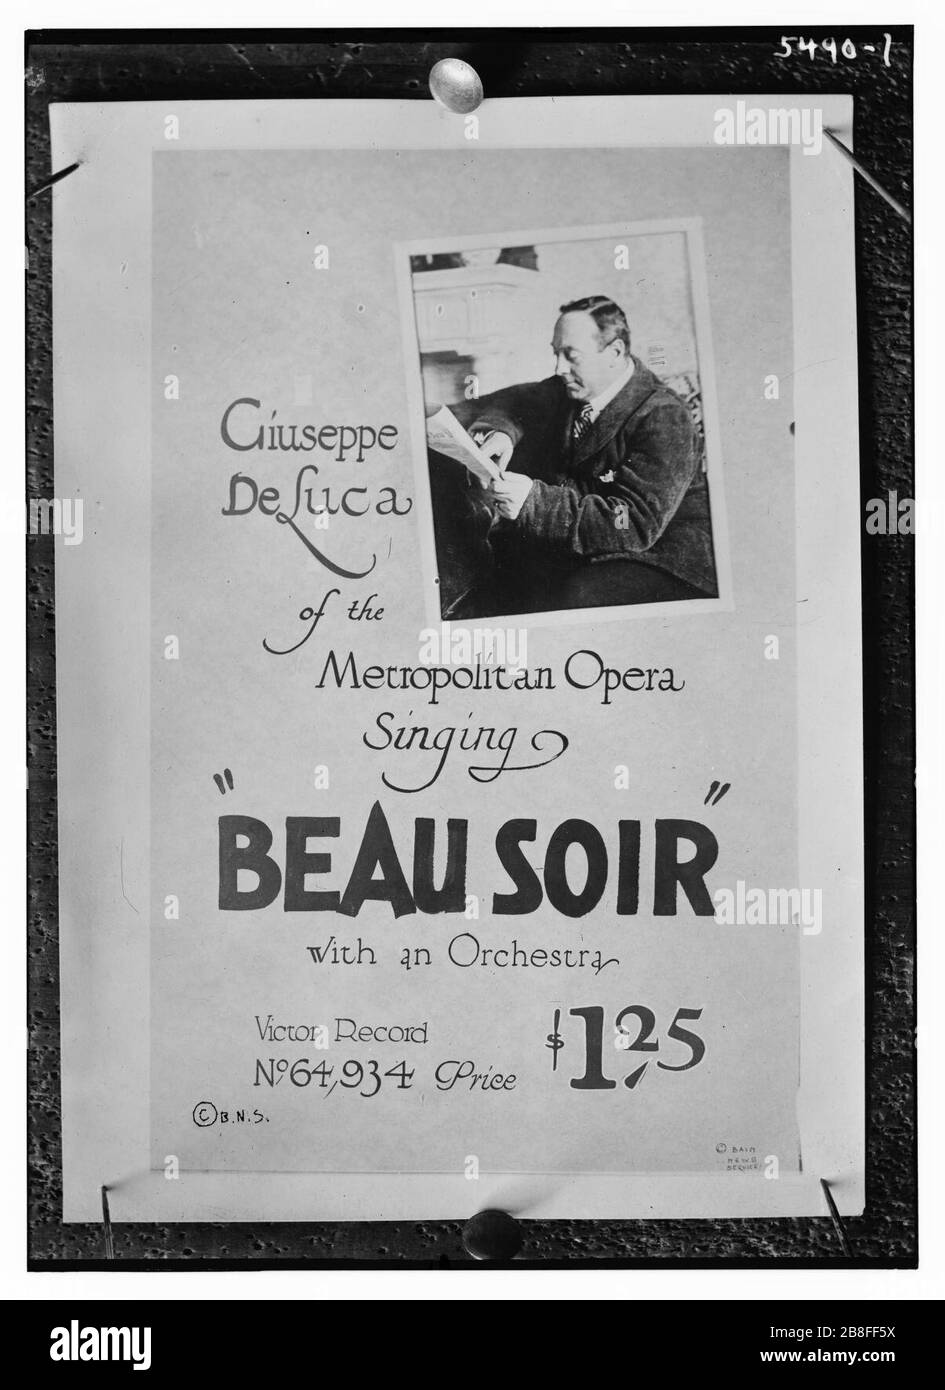 Giuseppe de Luca von der Metropolitan Opera singt "Beau Soir" mit einem Orchester, Victor Record Stockfoto